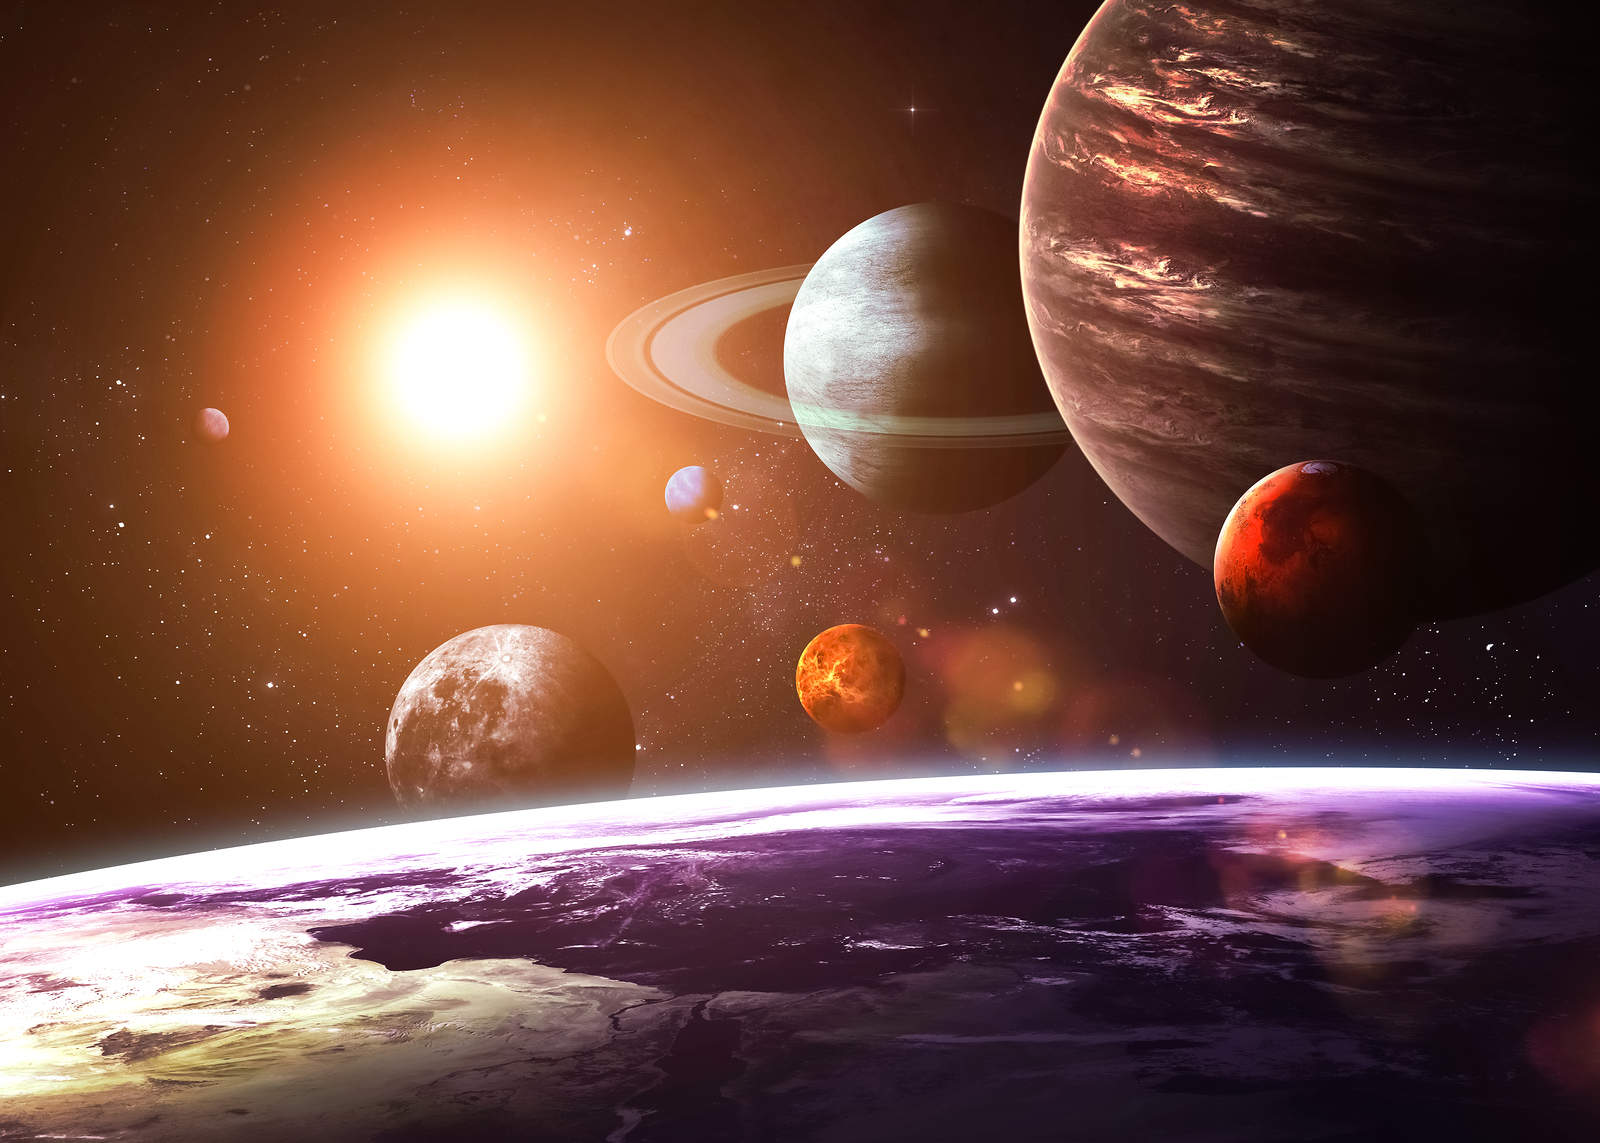 Сансар судлалд 2023 онд ямар дэвшил гарах вэ?